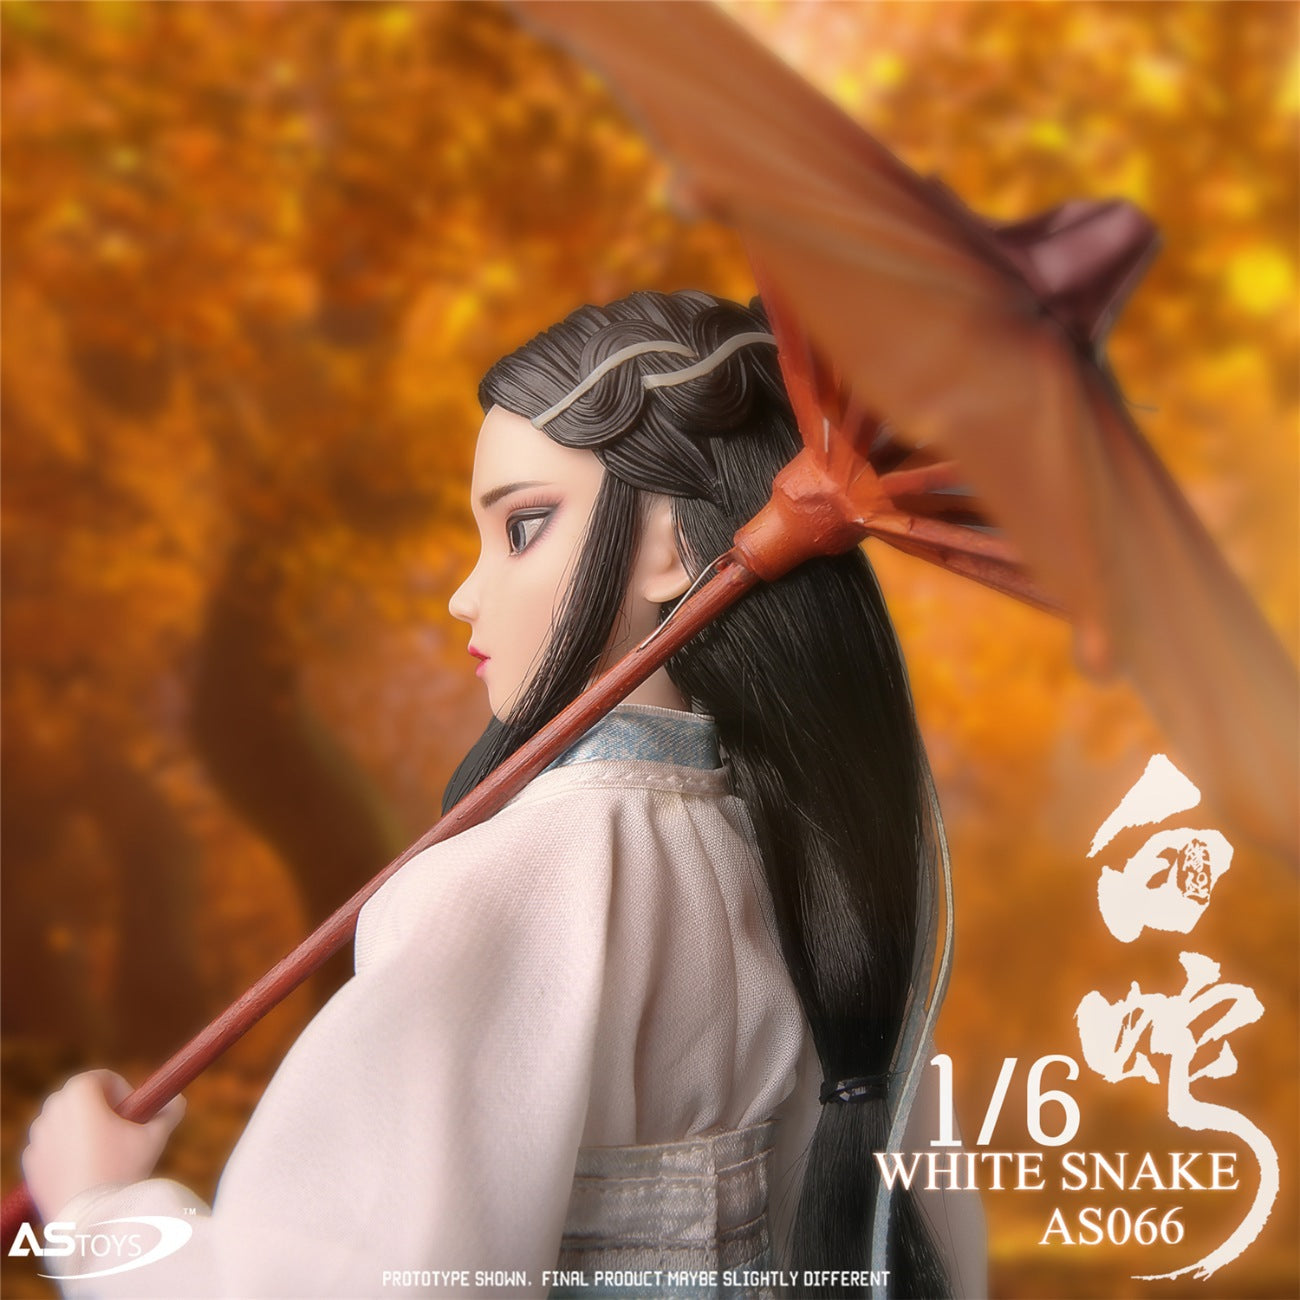 ASTOYS 1/6 AS066 WHITE SNAKE - Xiao-Bai (Blanca) action figure